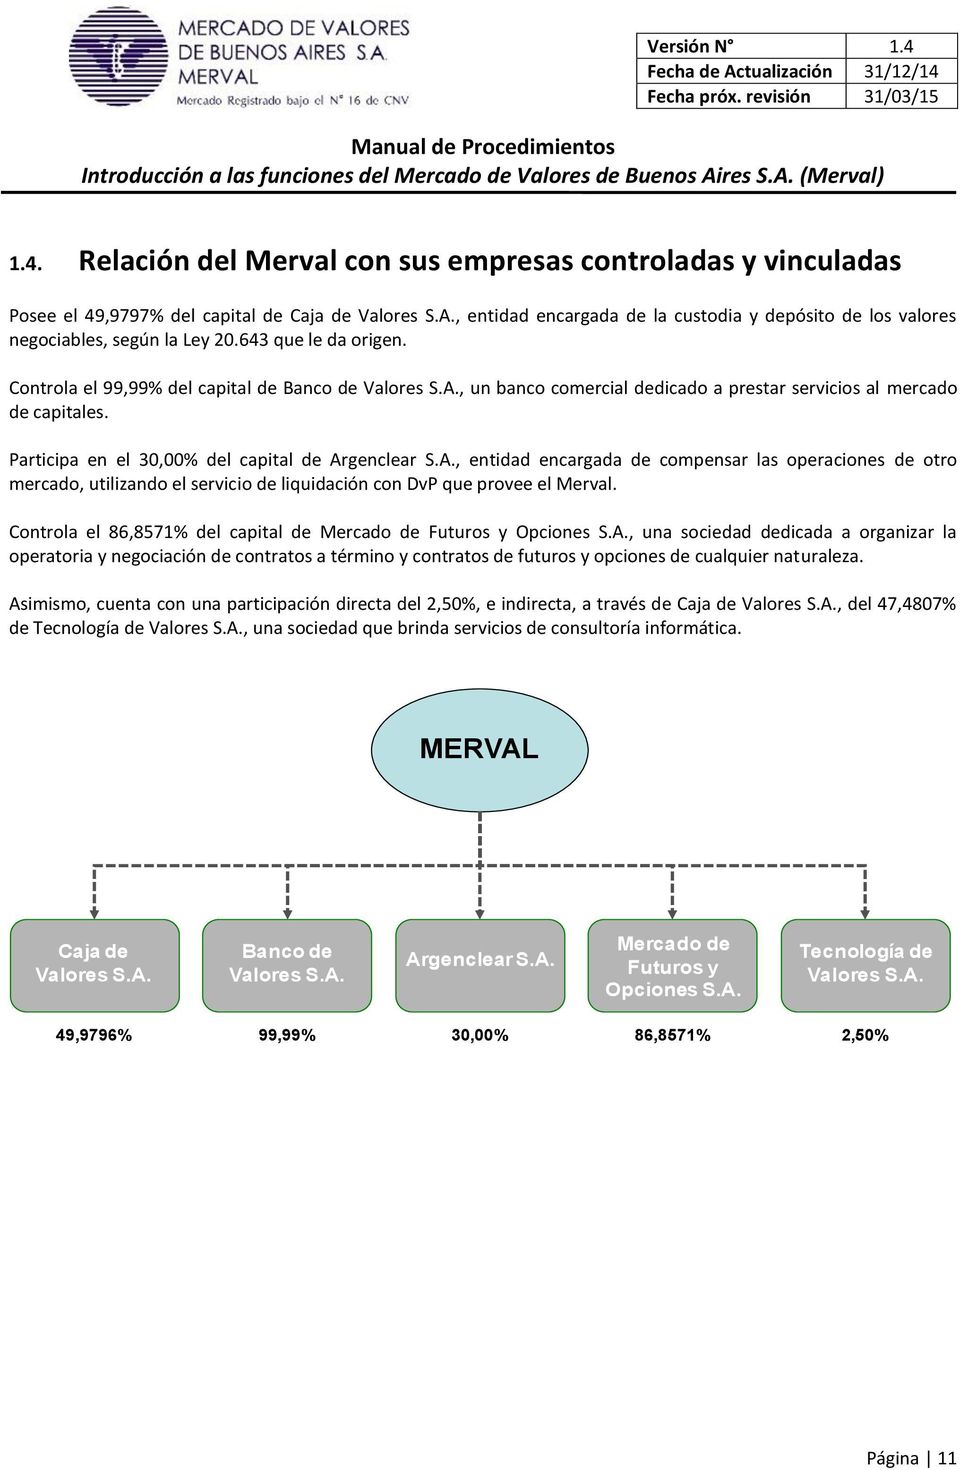 Participa en el 30,00% del capital de Argenclear S.A., entidad encargada de compensar las operaciones de otro mercado, utilizando el servicio de liquidación con DvP que provee el Merval.